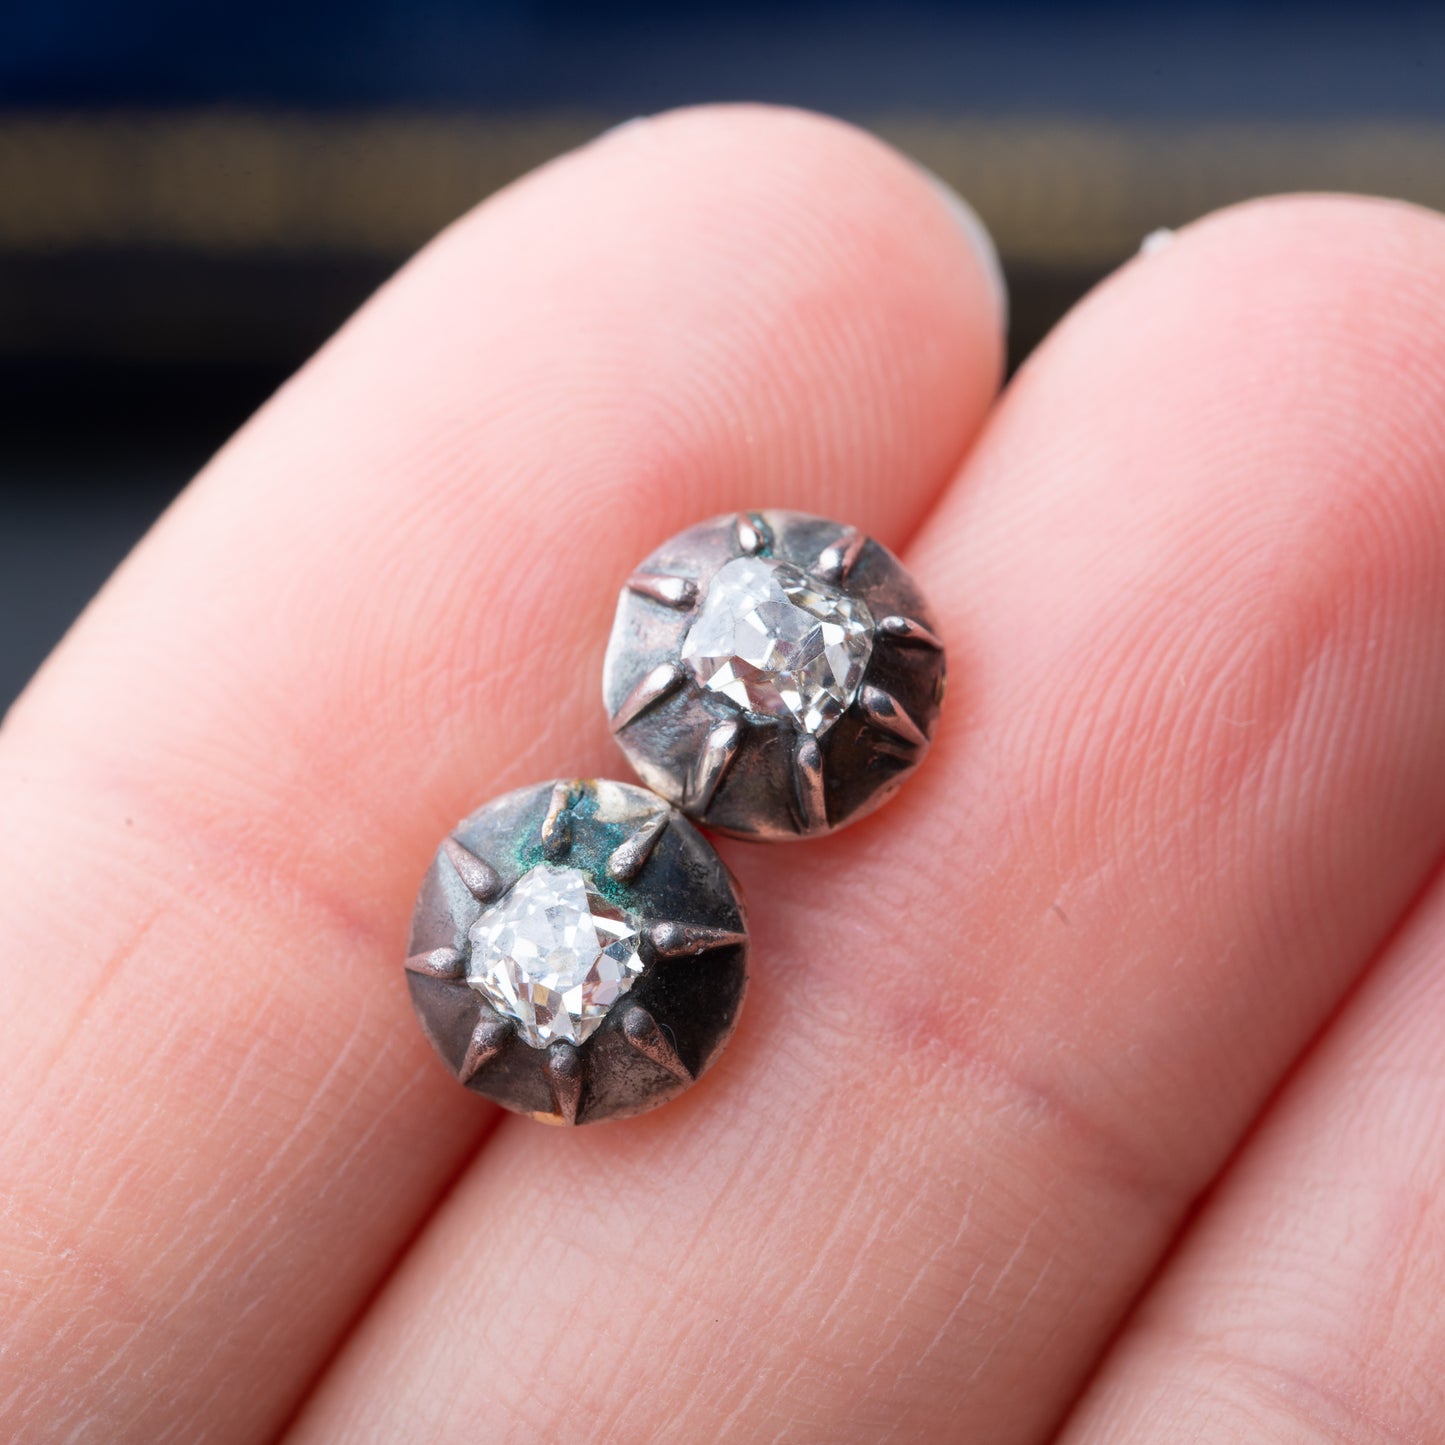 Antique old mine cut diamond earrings